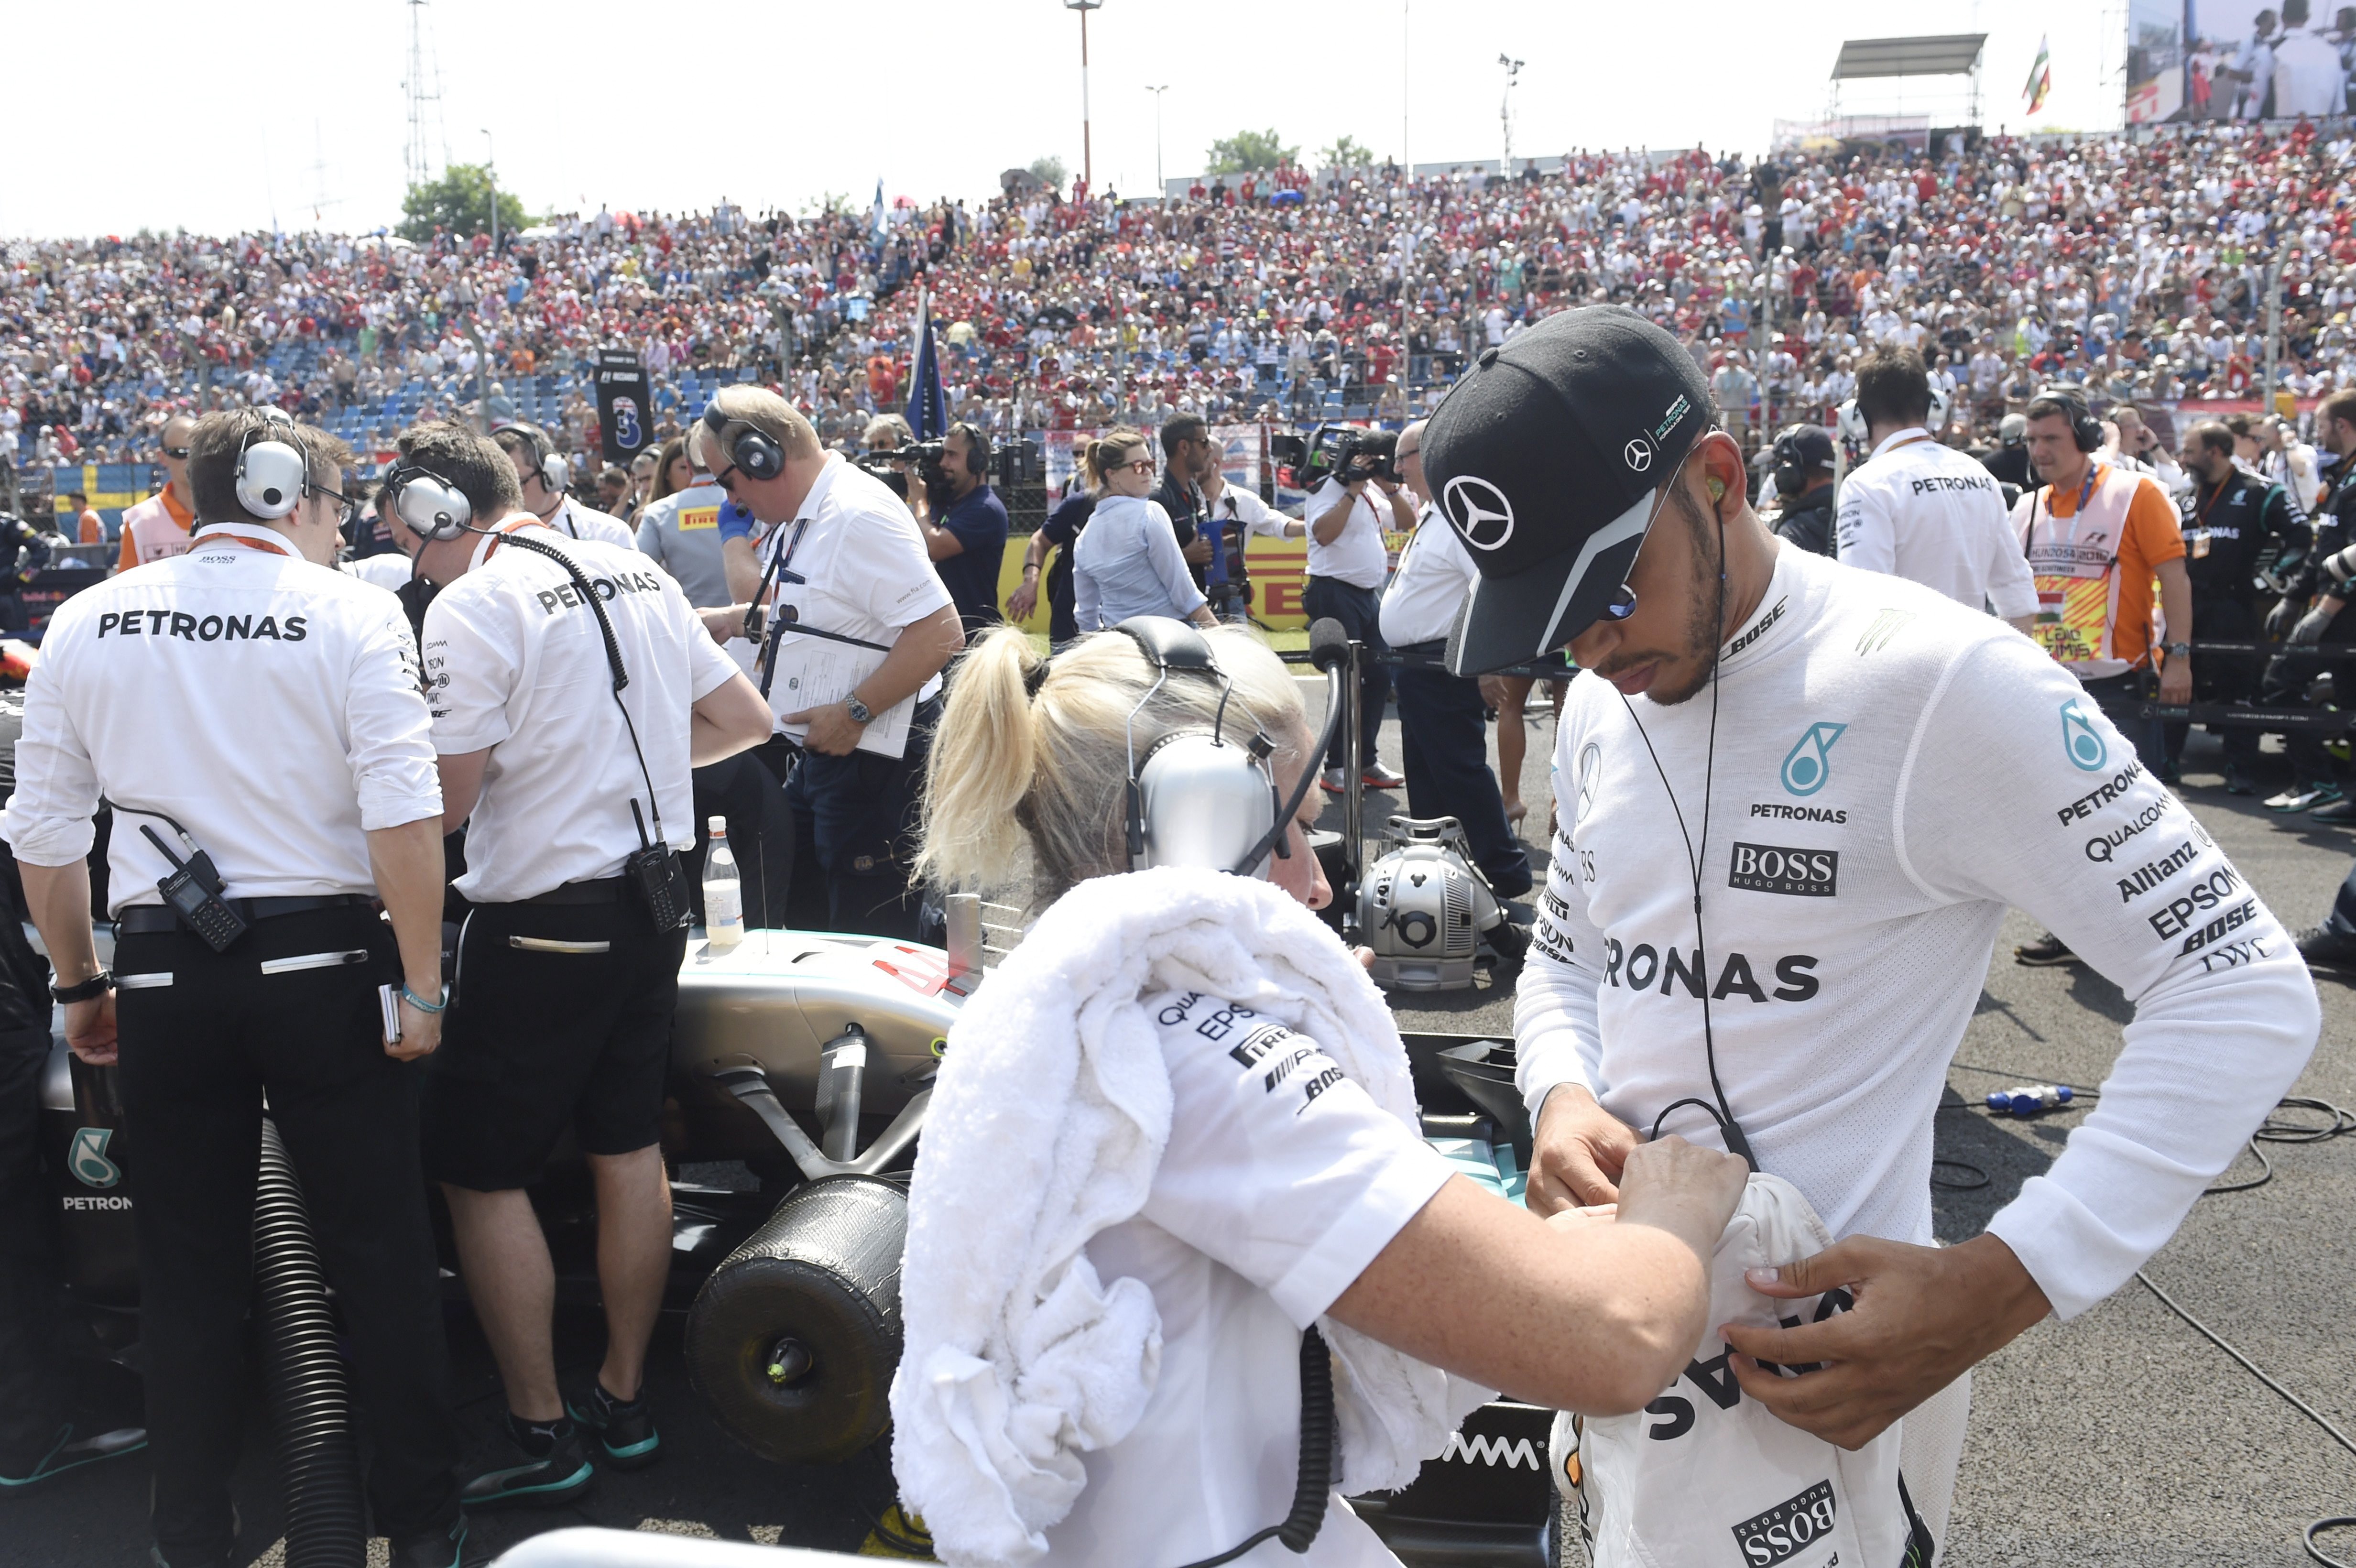 Forma-1: Hamilton nyert, rekordot döntött, és vezet az összetettben